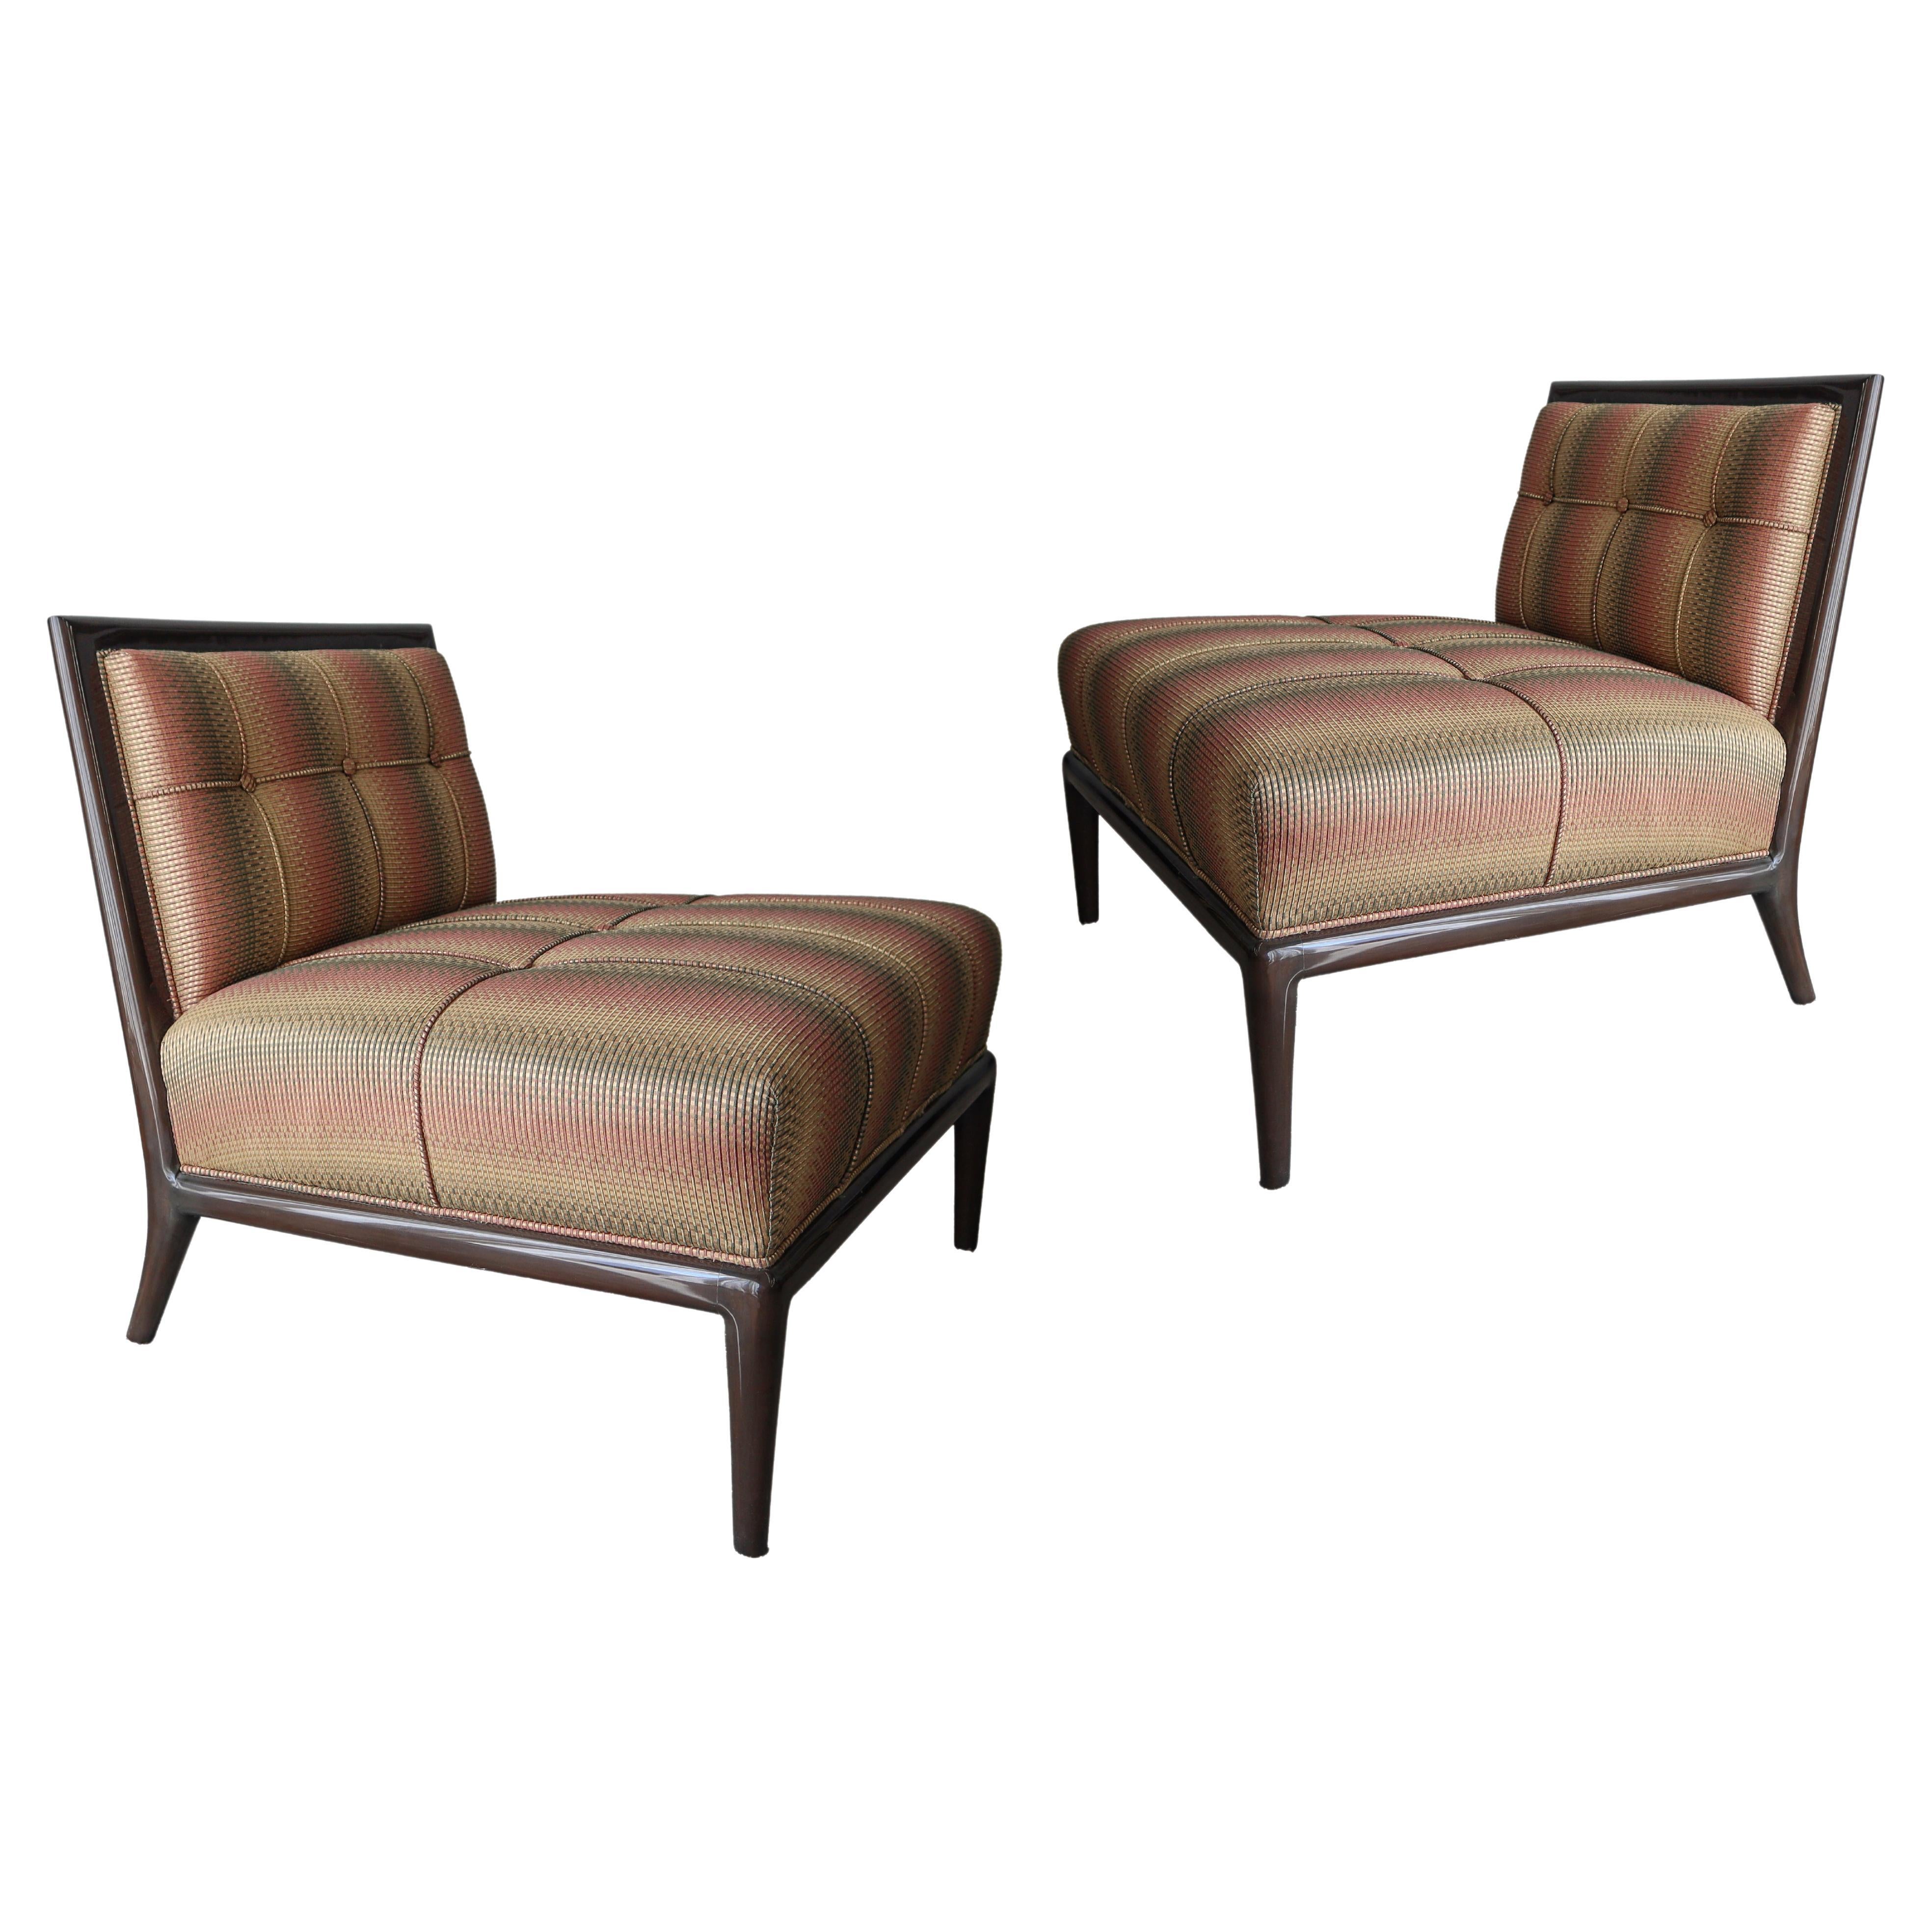 Pair of Slipper Chairs by Nancy Corzine